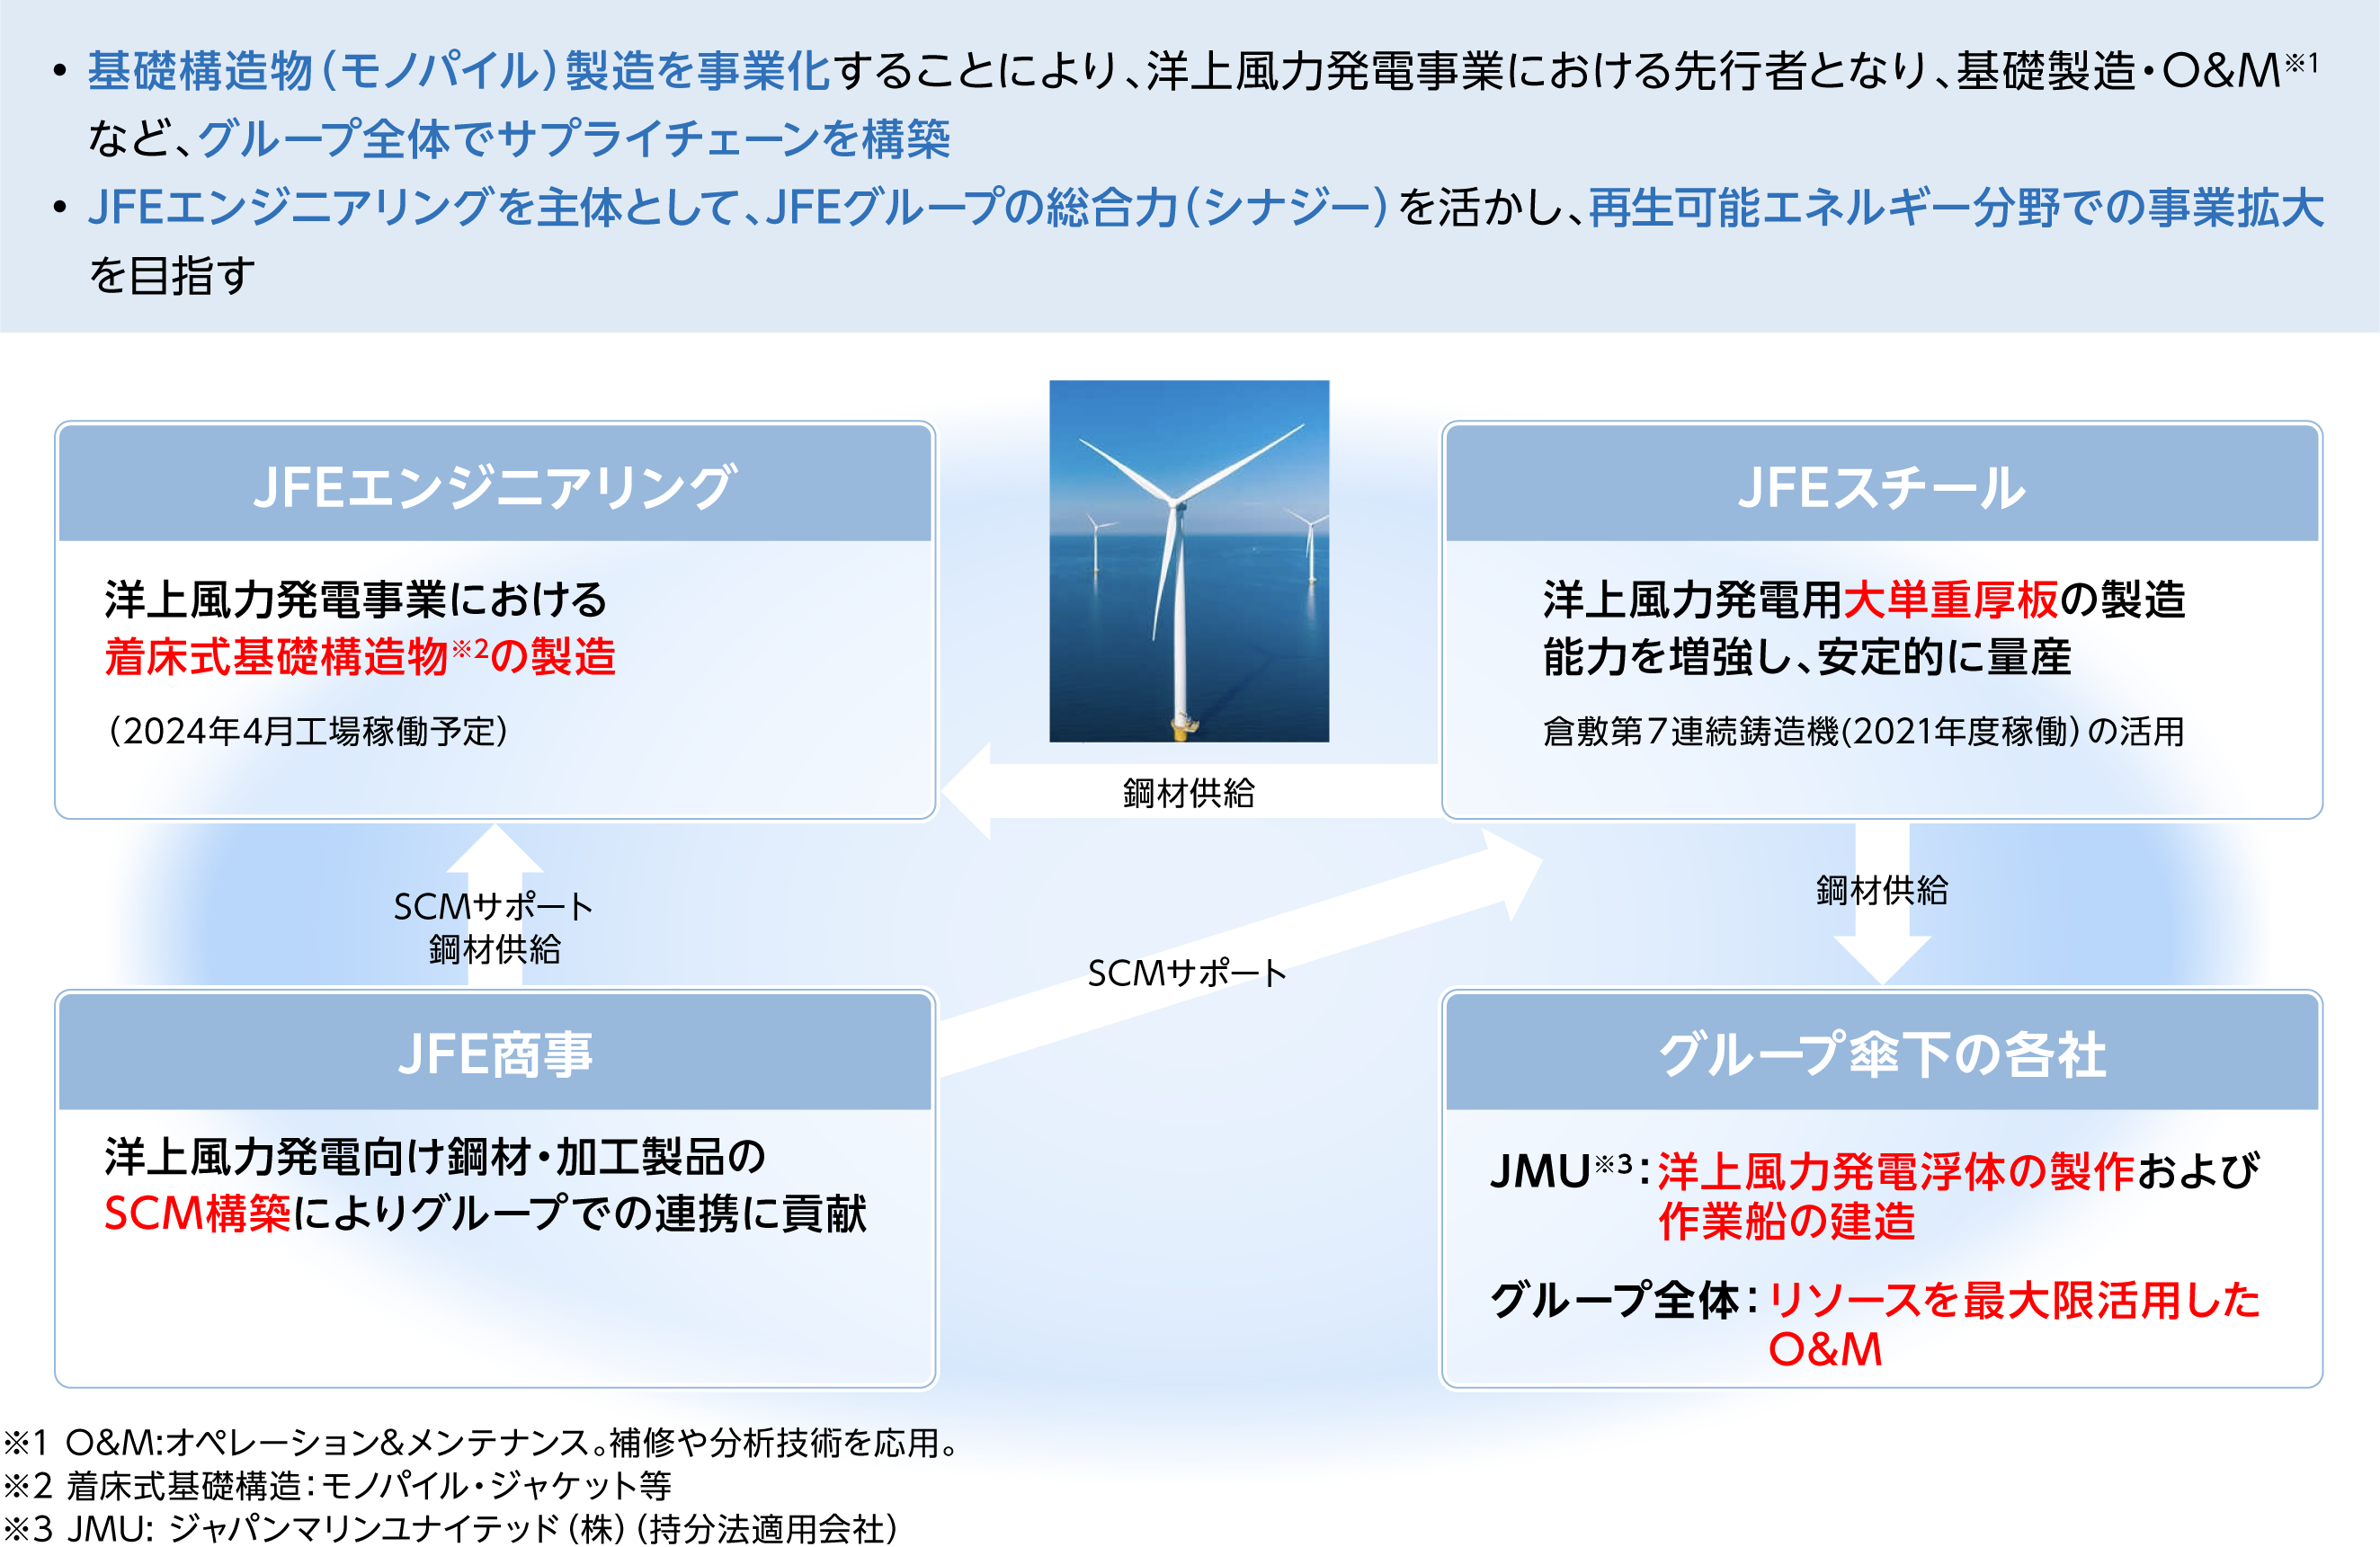 洋上風力発電ビジネスの事業化推進